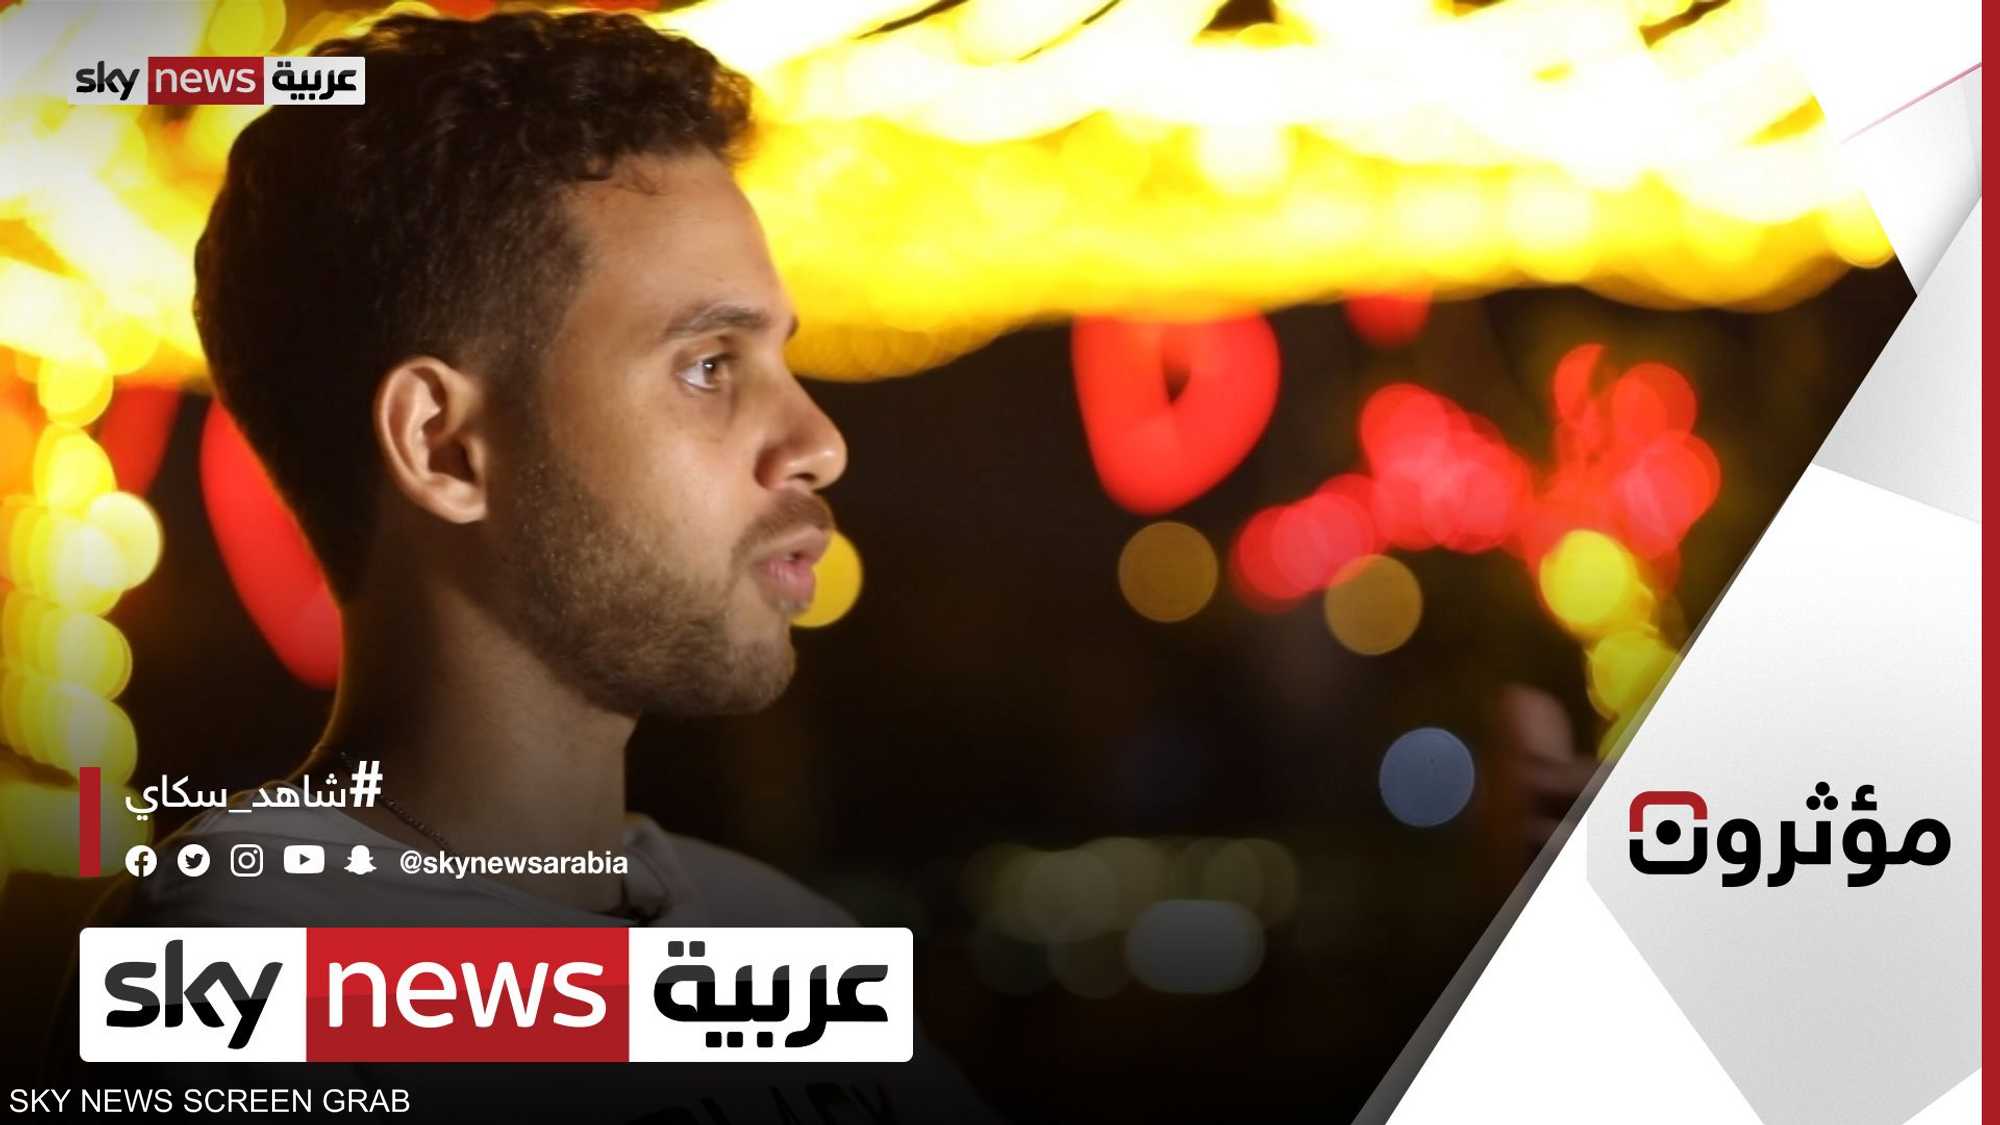 محمود او مسلم يقدم فيديوهات اجتماعية فكاهية في مصر